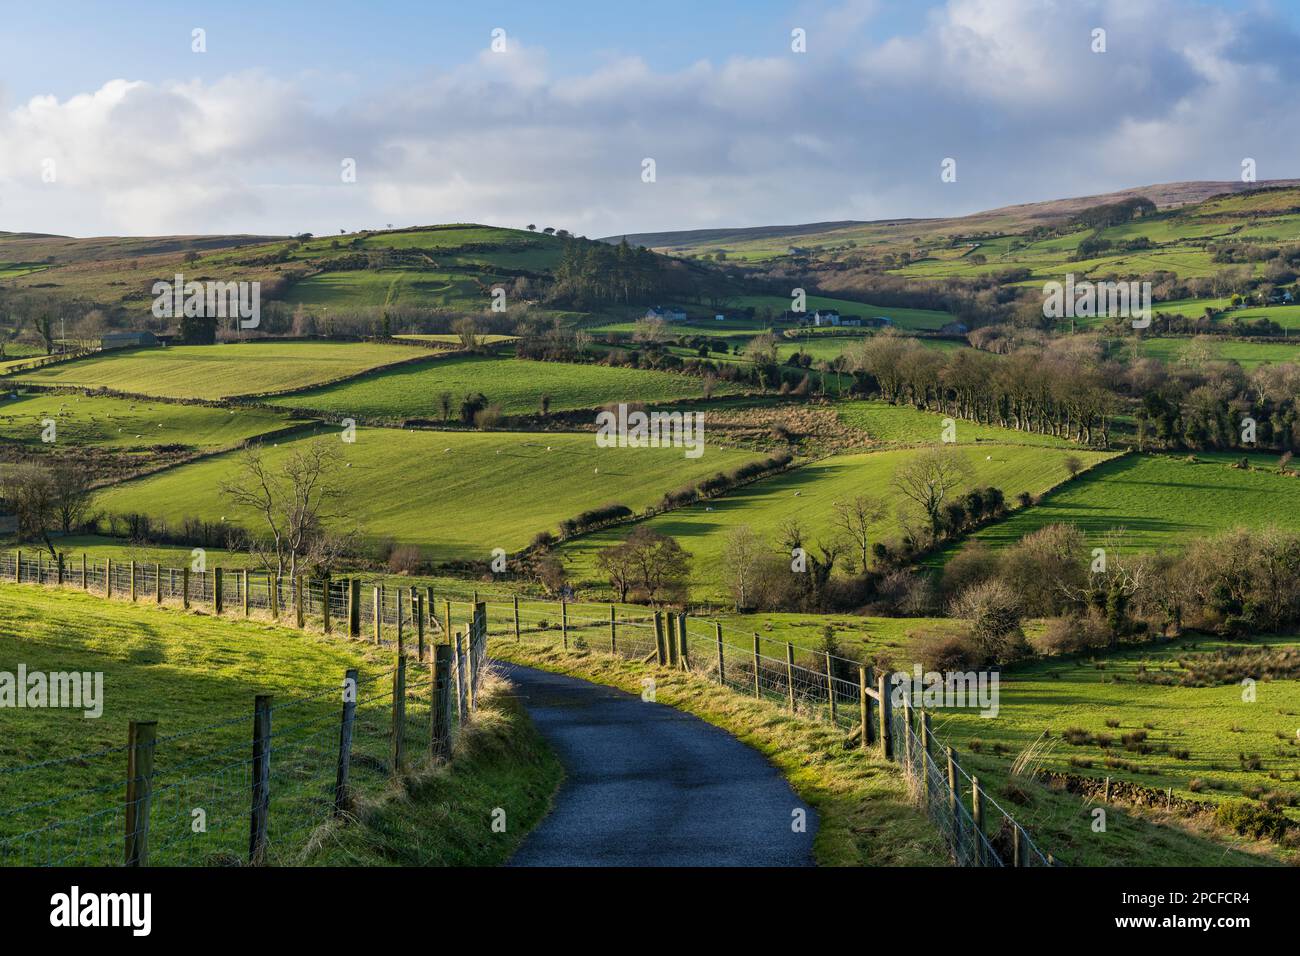 Eine ruhige Landstraße schlängelt sich durch die sanften Hügel und grünen Felder der Glens of Antrim, übersät mit Farmen und Schafen, die friedlich weiden Stockfoto